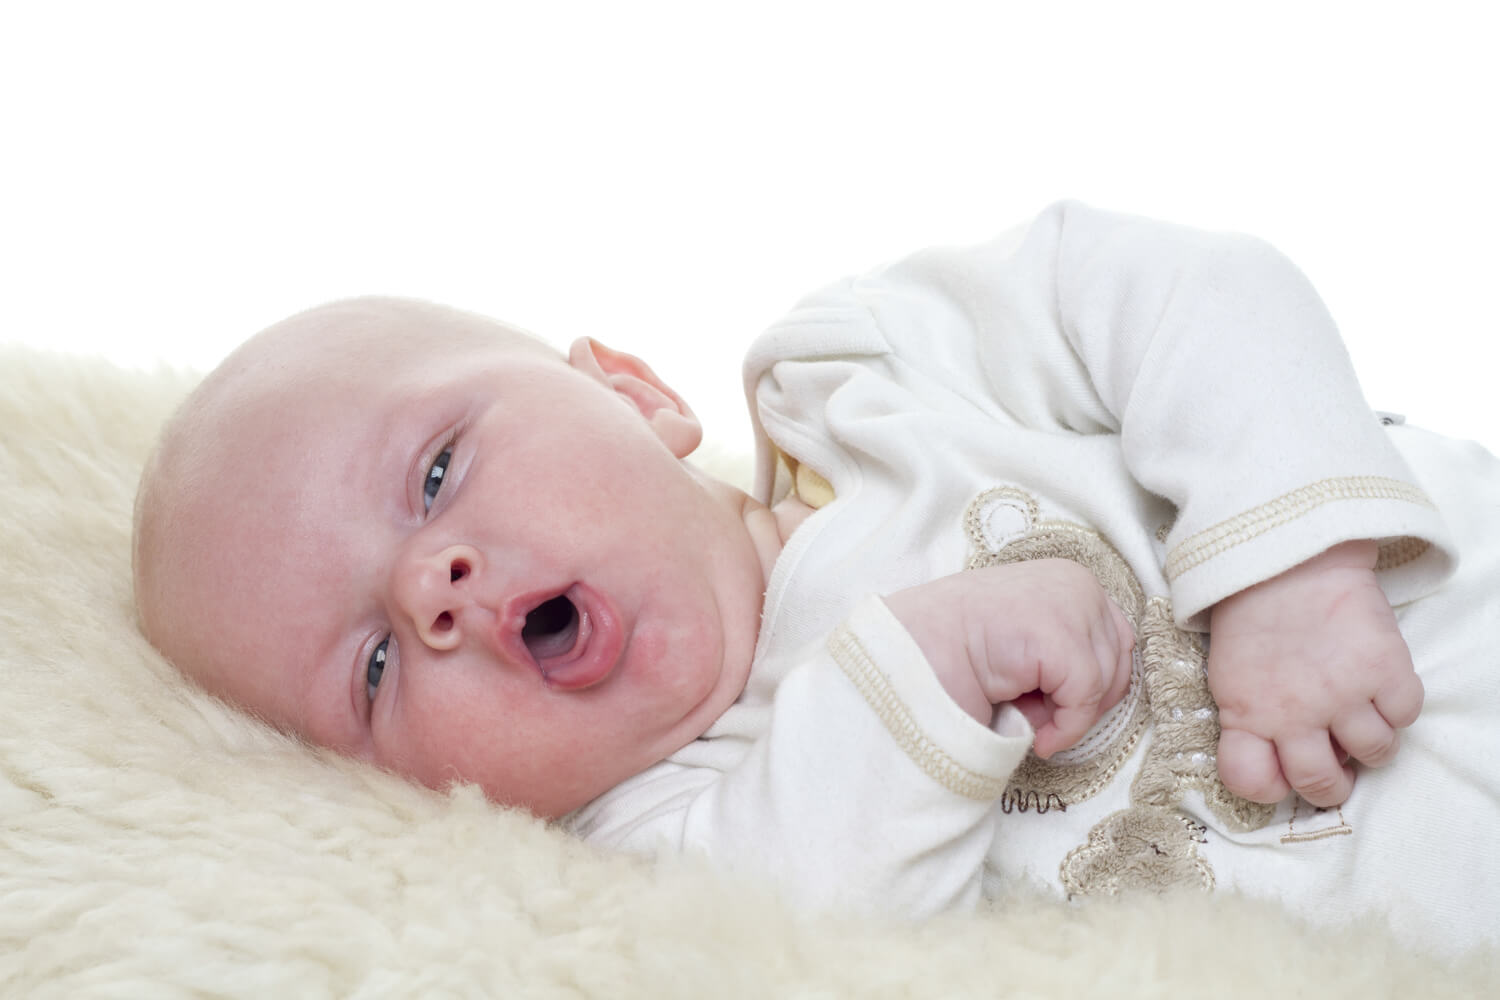 bronchiolitis in babies